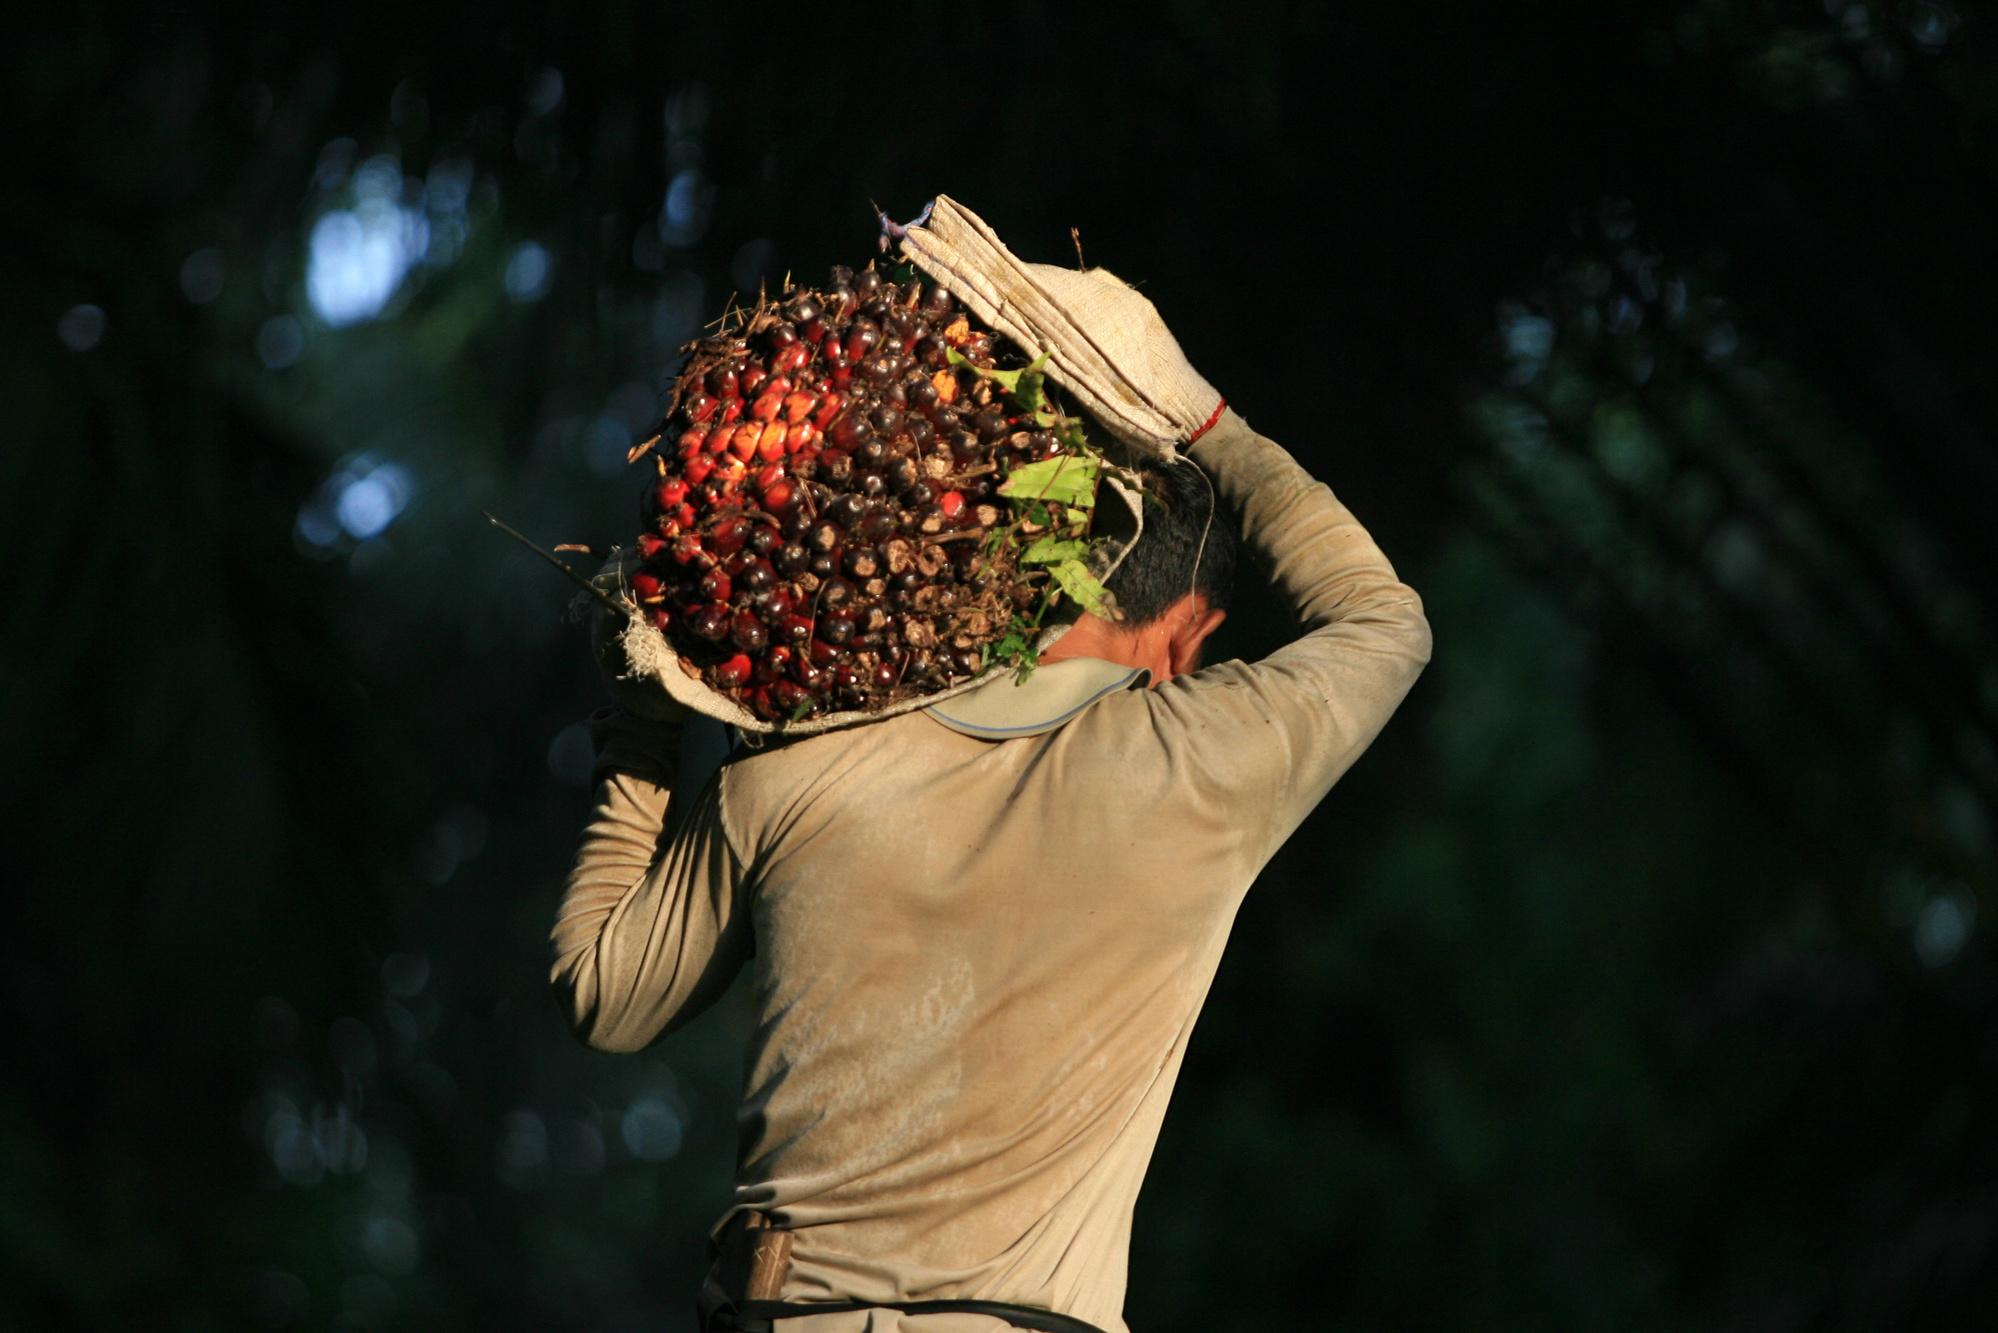 Wie duurzame palmolie verkoopt, zal zijn werknemers volgens de standaard van RSPO een minimumloon moeten betalen.